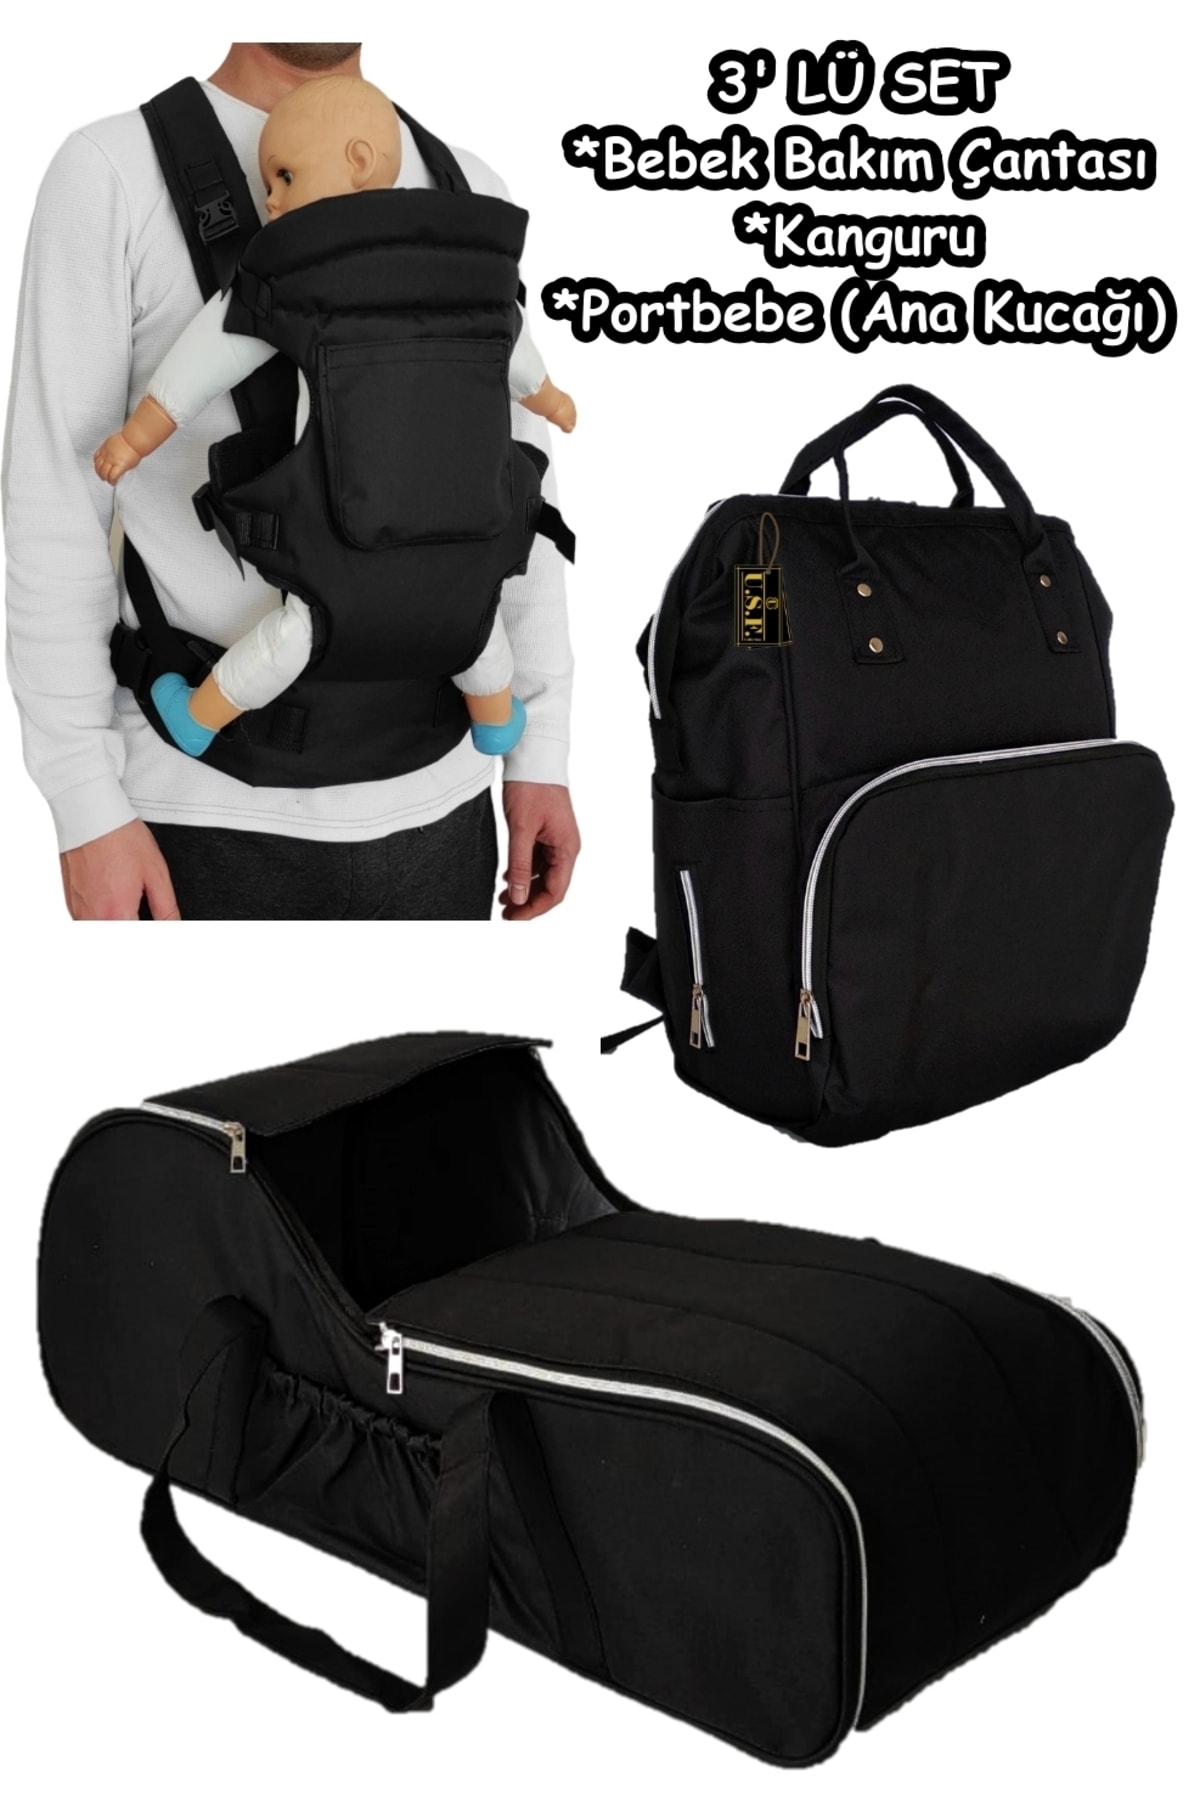 USF Portbebe Ana Kucağı + Bebek Taşıma Kanguru + Bebek Bakım Çantası 3 Lü Set Düz-siyah